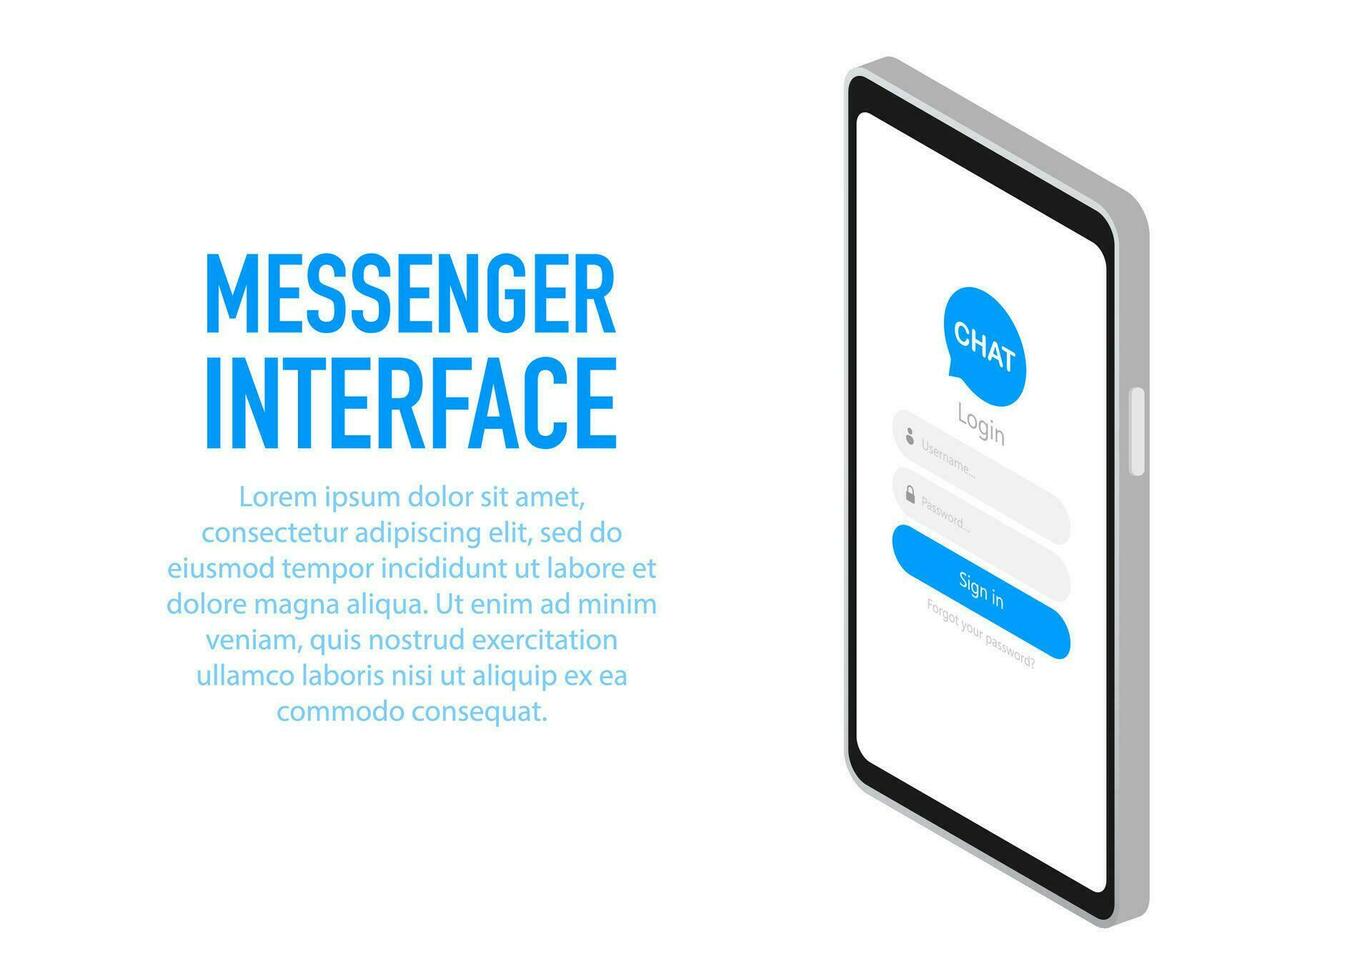 na moda mensageiro interface inscrição com diálogo janela. SMS mensageiro. vetor ilustração.